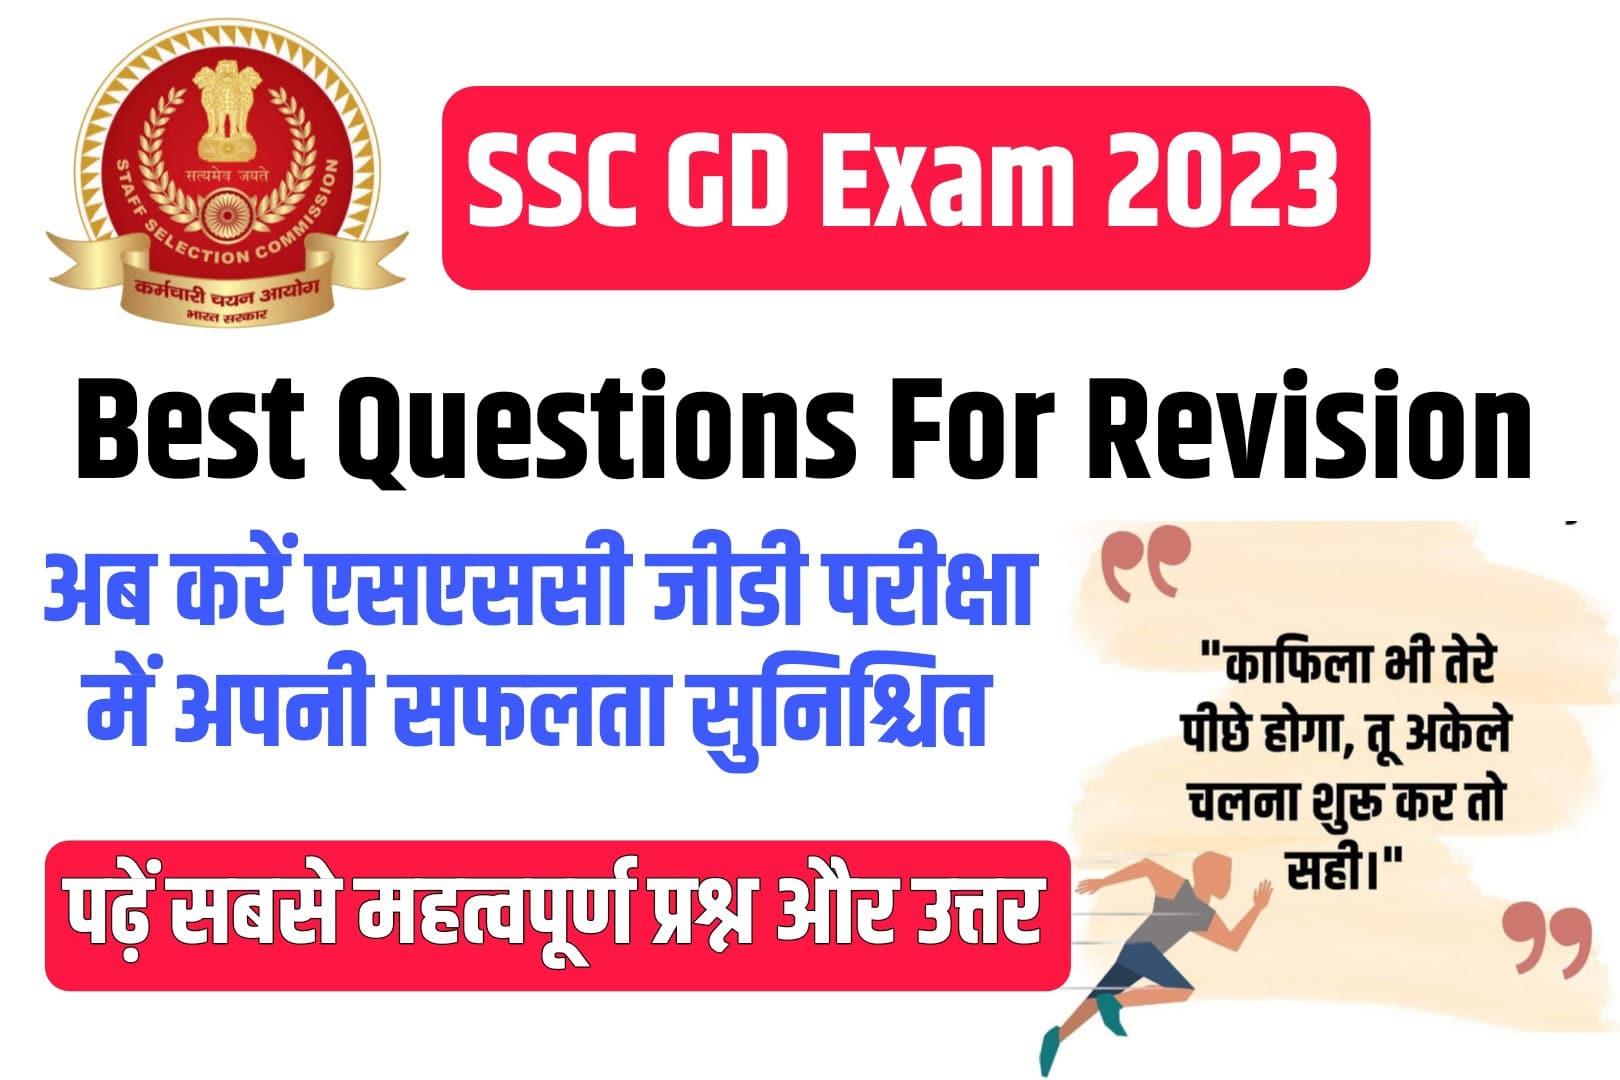 SSC GD Exam 2023 Best Questions For Revision: इन प्रश्नों के साथ करें बेहतर तैयारी, रिवीजन हेतु सबसे महत्वपूर्ण MCQ